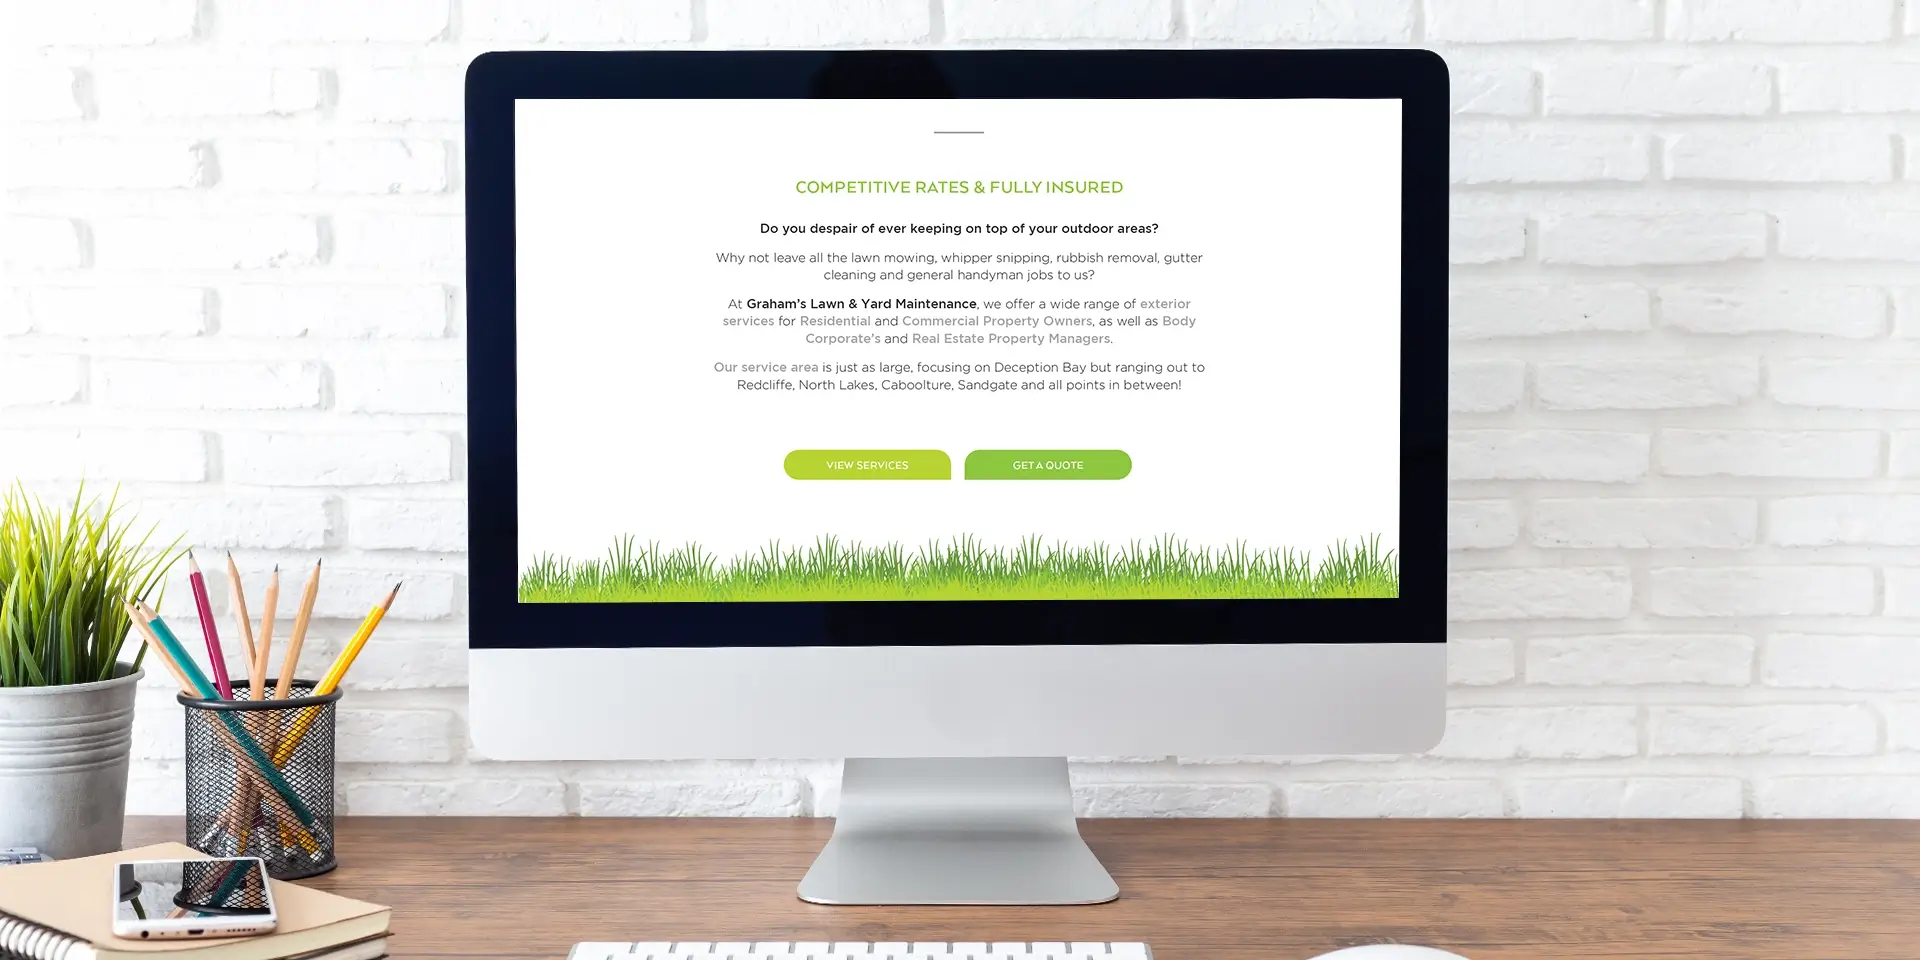 Gardener's Website Design